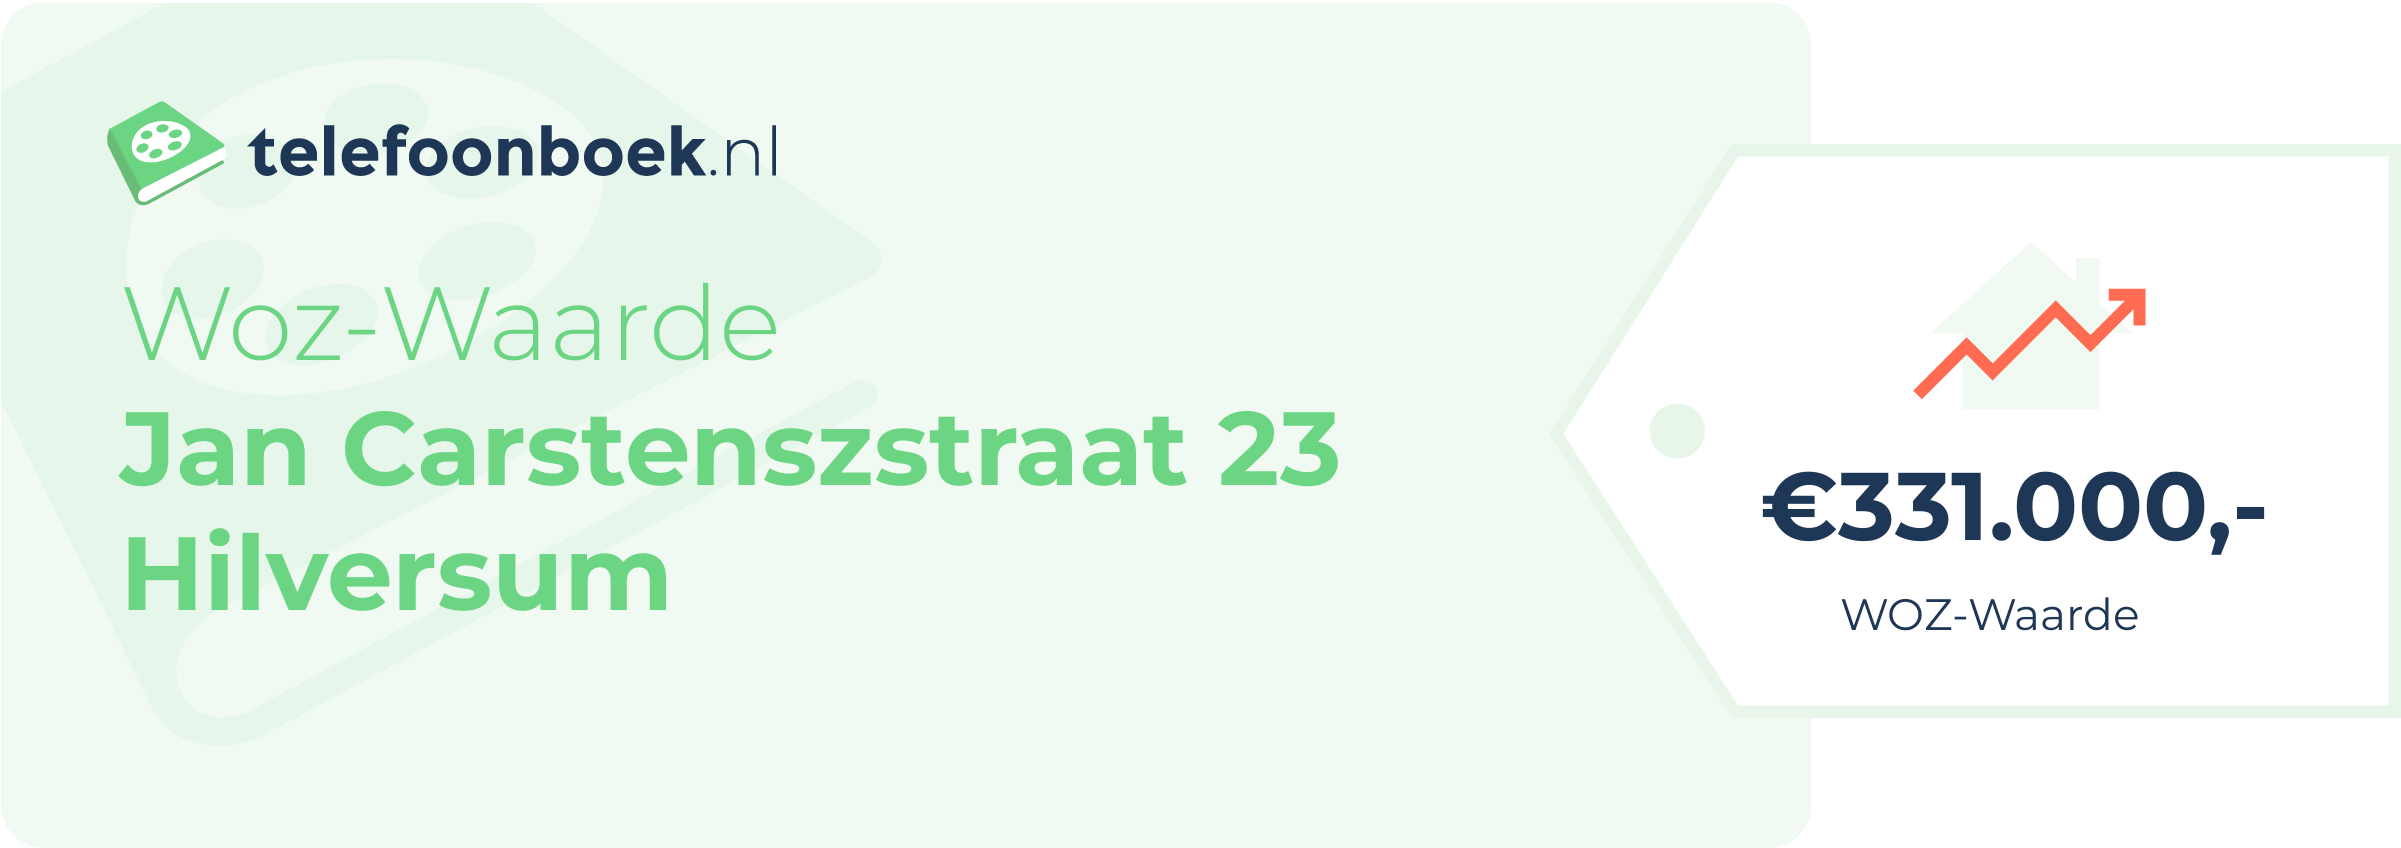 WOZ-waarde Jan Carstenszstraat 23 Hilversum